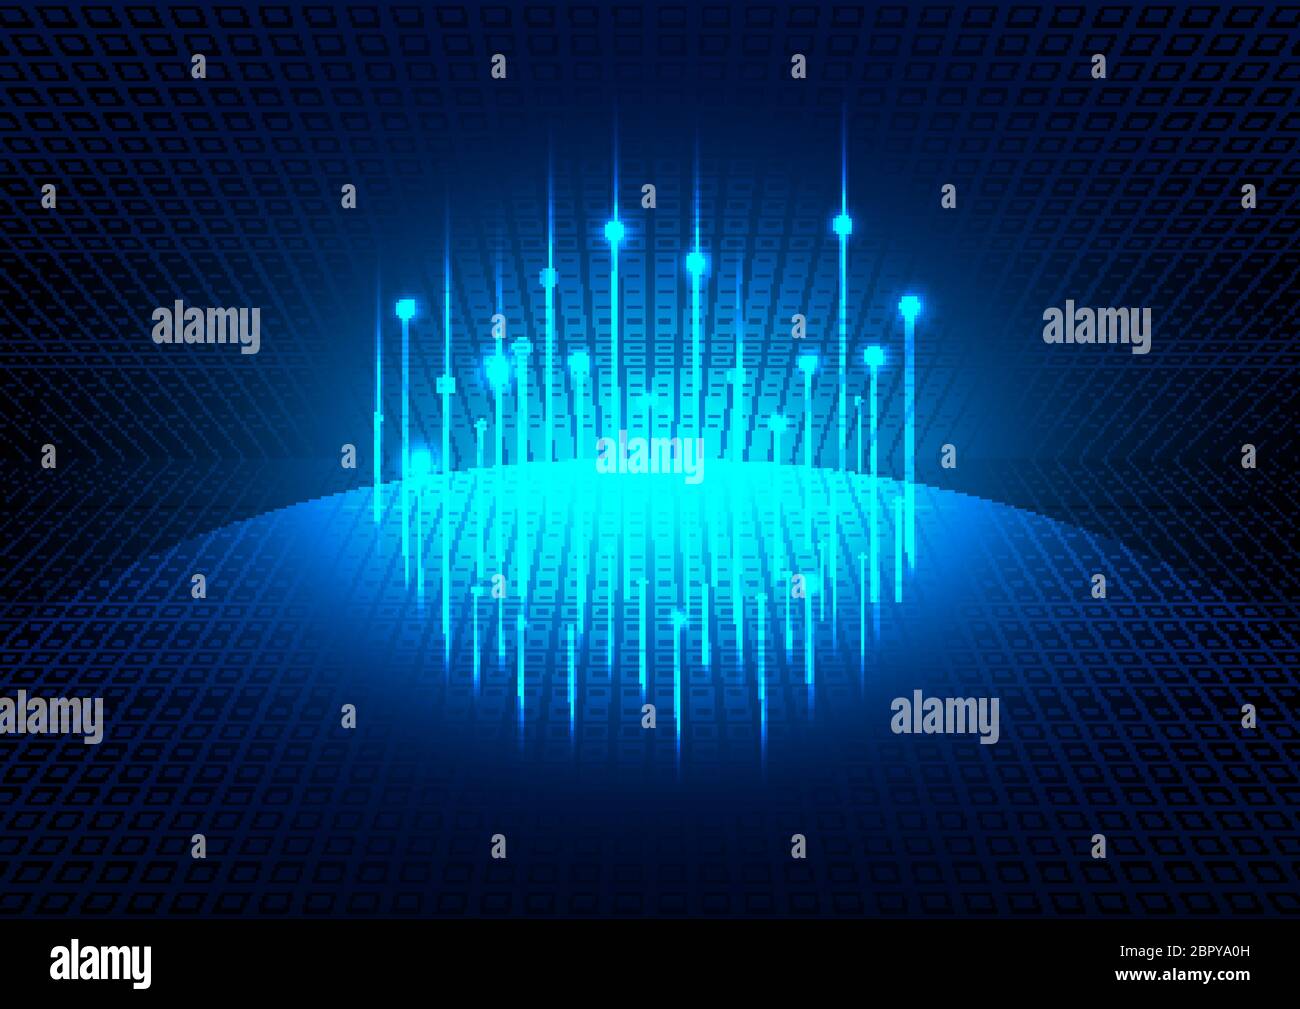 Fond futuriste lumineux bleu avec réseau social mondial de la planète. Concept de technologie. Illustration vectorielle Illustration de Vecteur